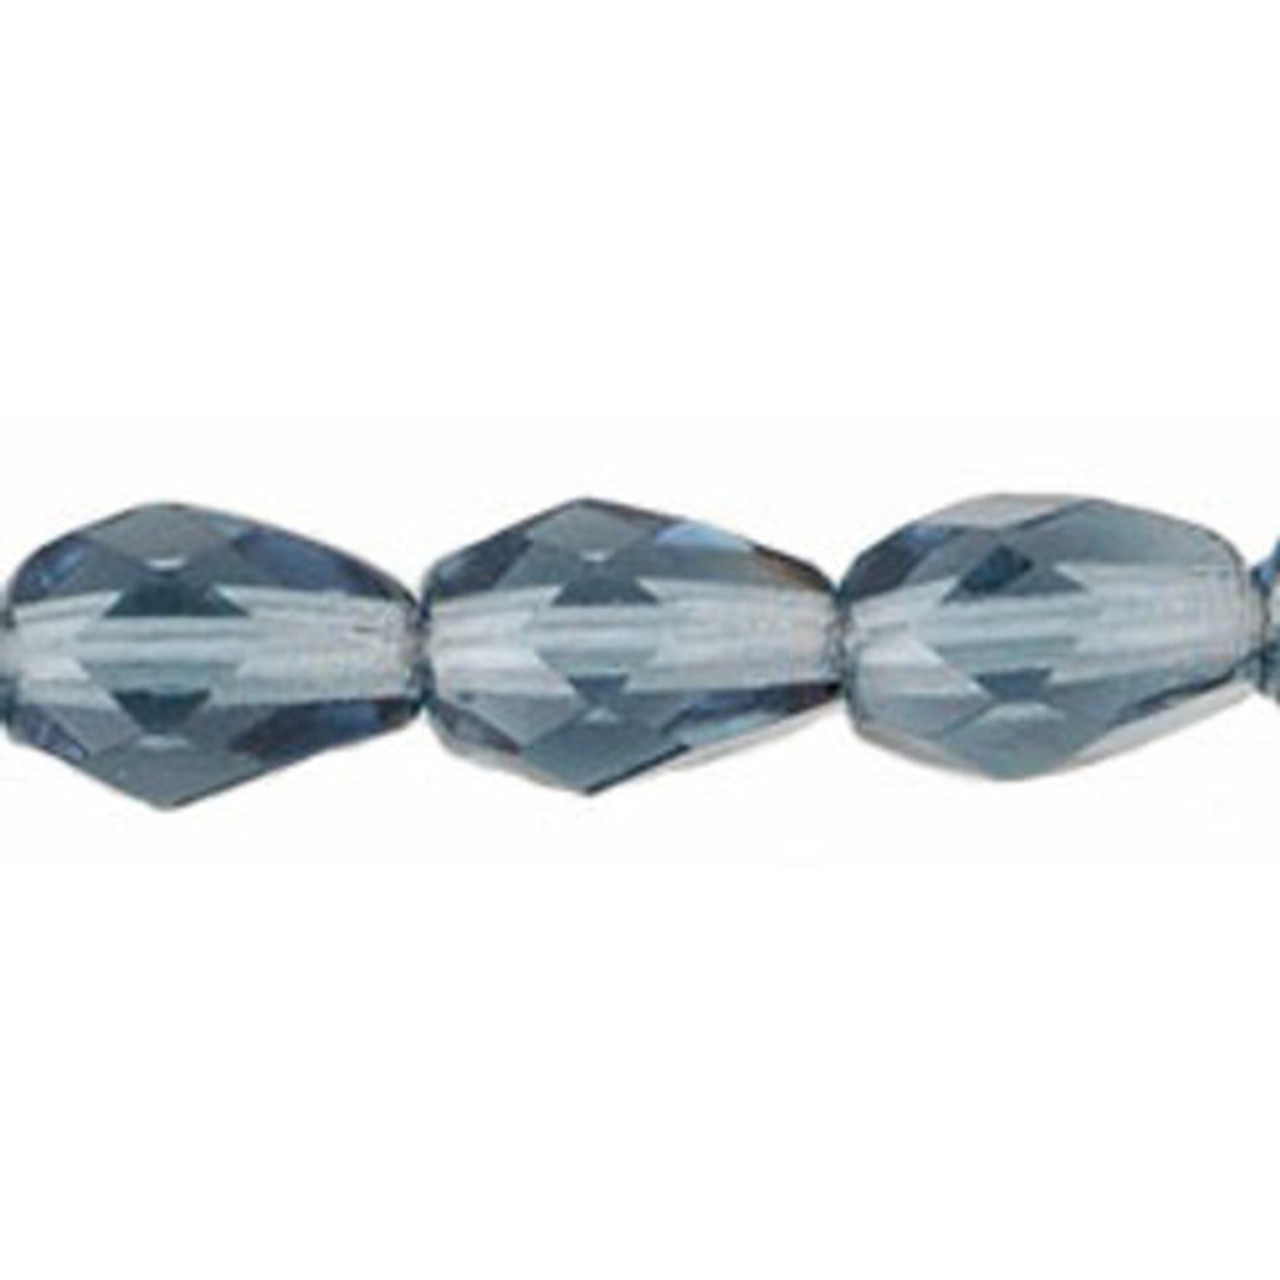 Faceted Vertical Teardrop Beads Czech Glass Firepolish MONTANA BLUE 7x5mm  (25pcs)